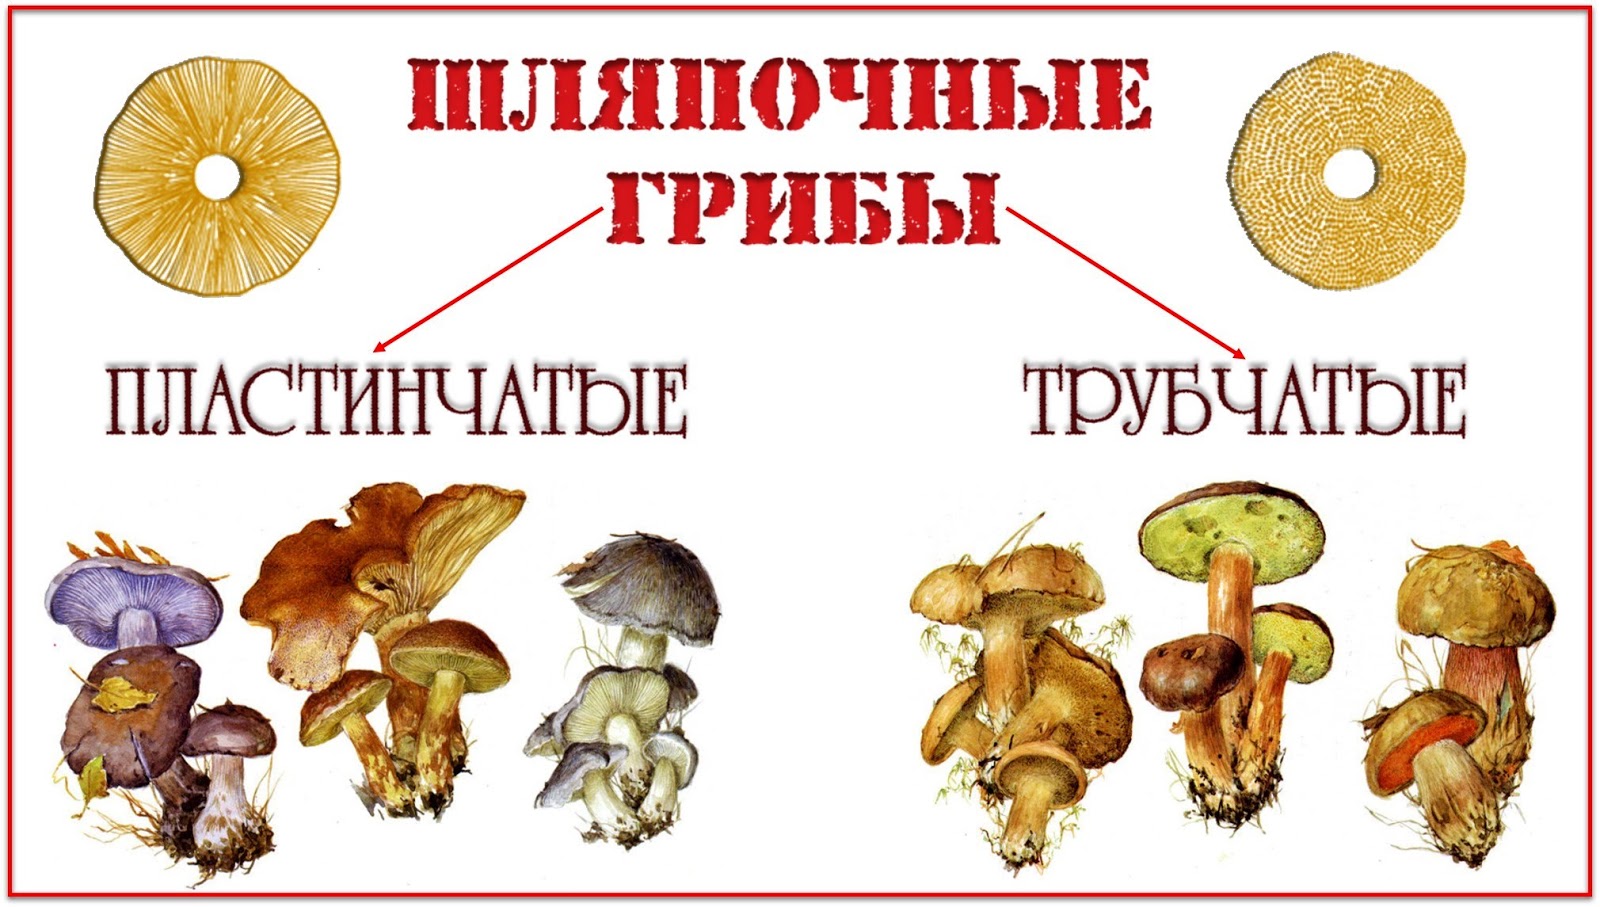 Шляпочные грибы трубчатые и пластинчатые схема